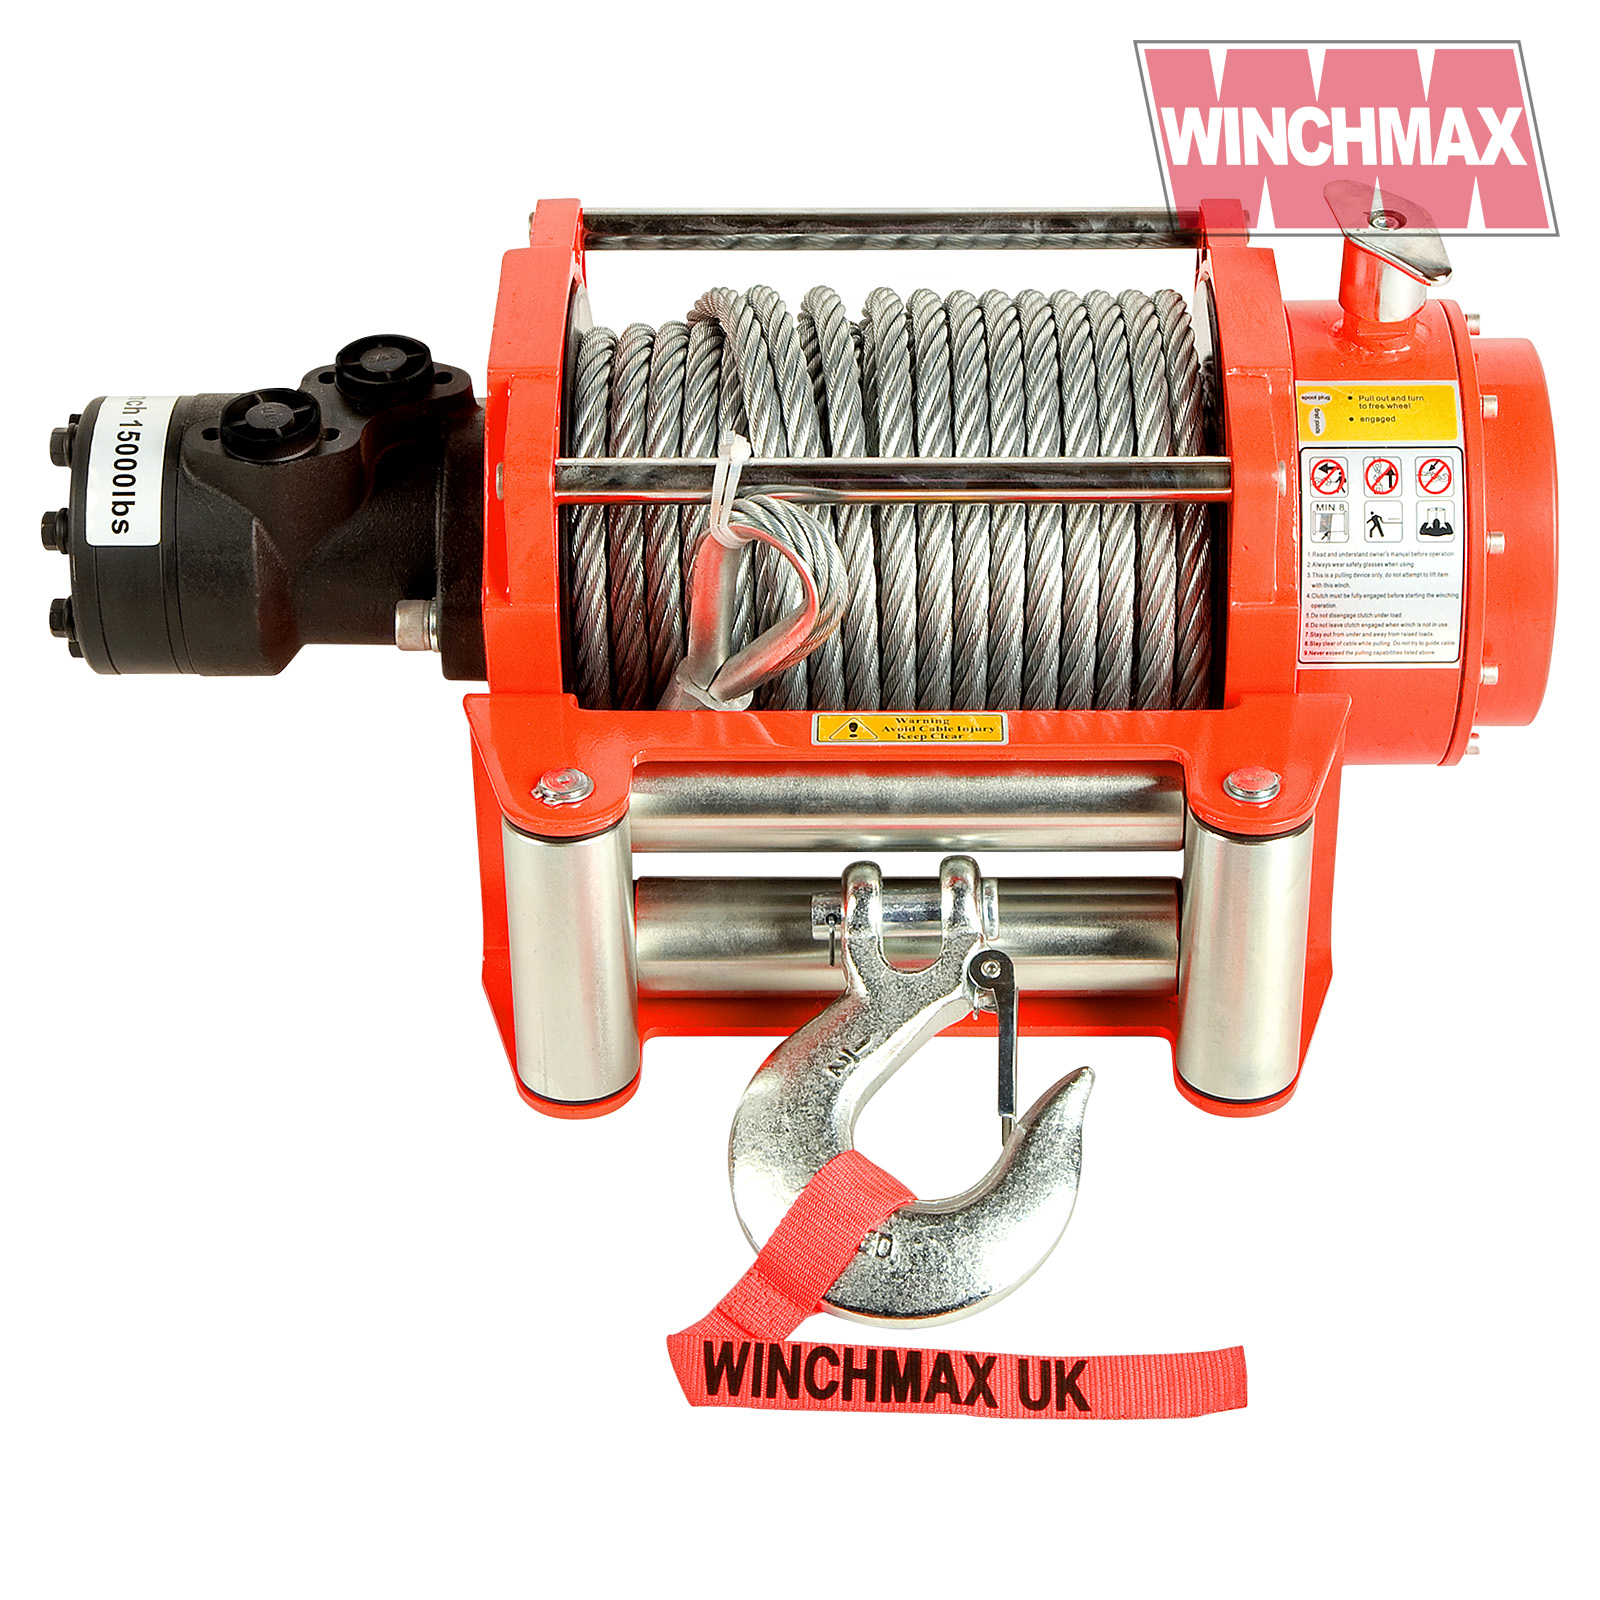 Winchmax 15000lb Hydraulic Winch. Steel Rope